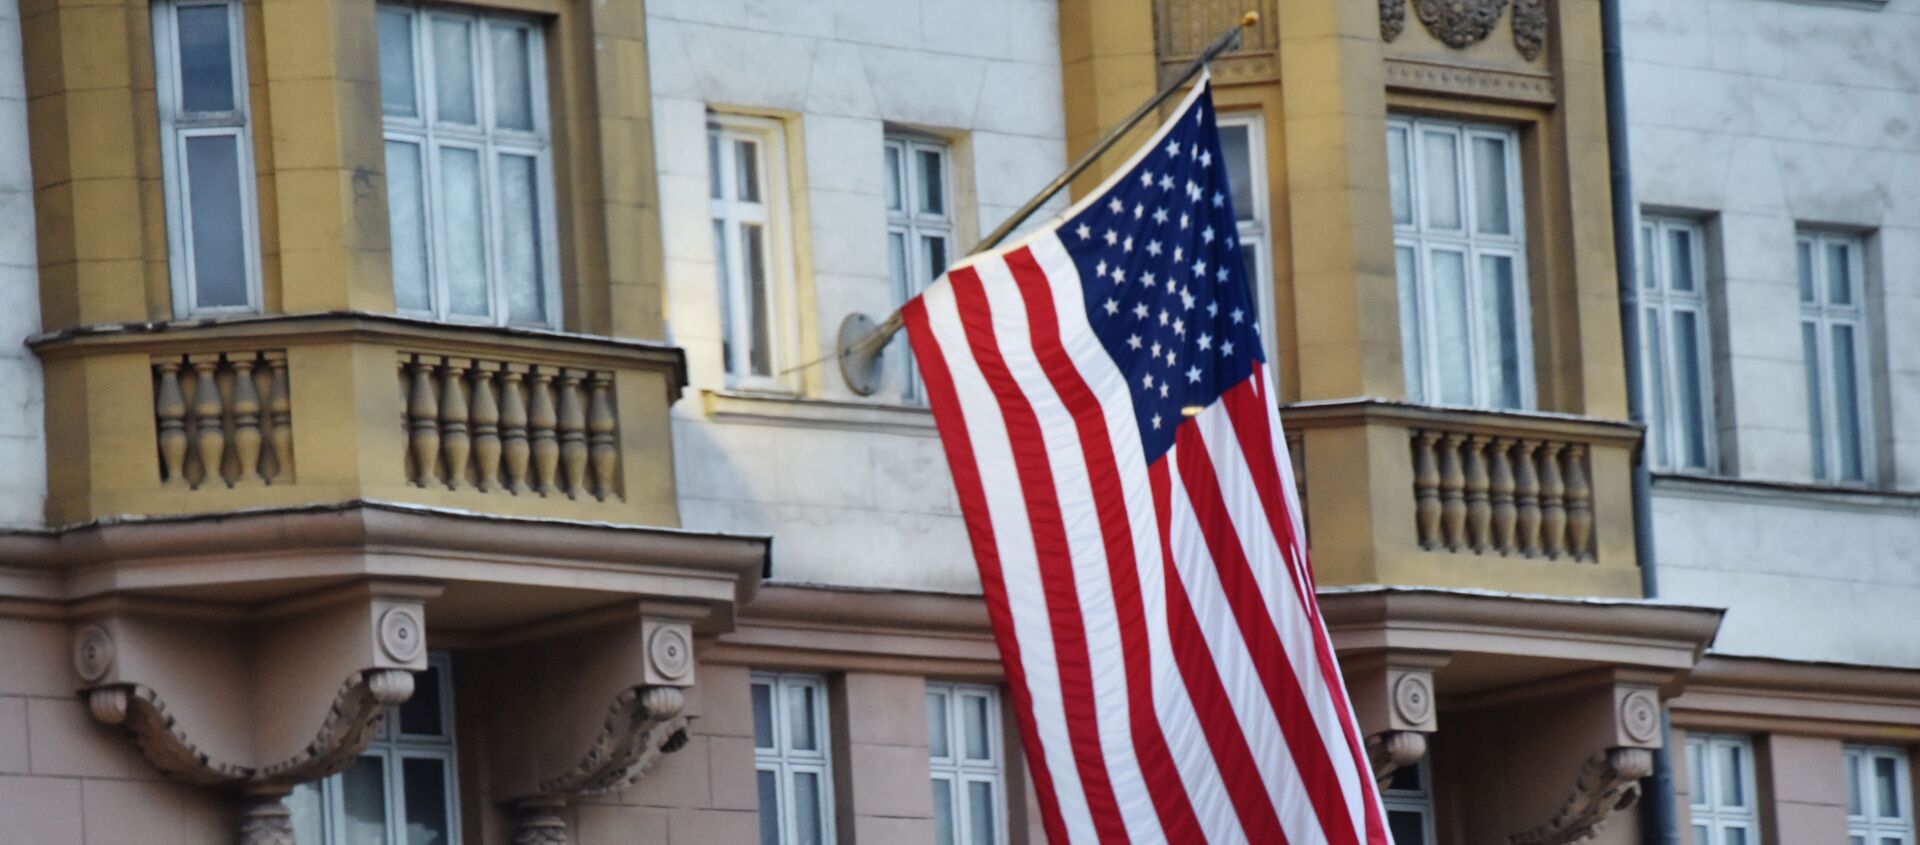 Флаг США на здании посольства в Москве - Sputnik Узбекистан, 1920, 25.01.2021